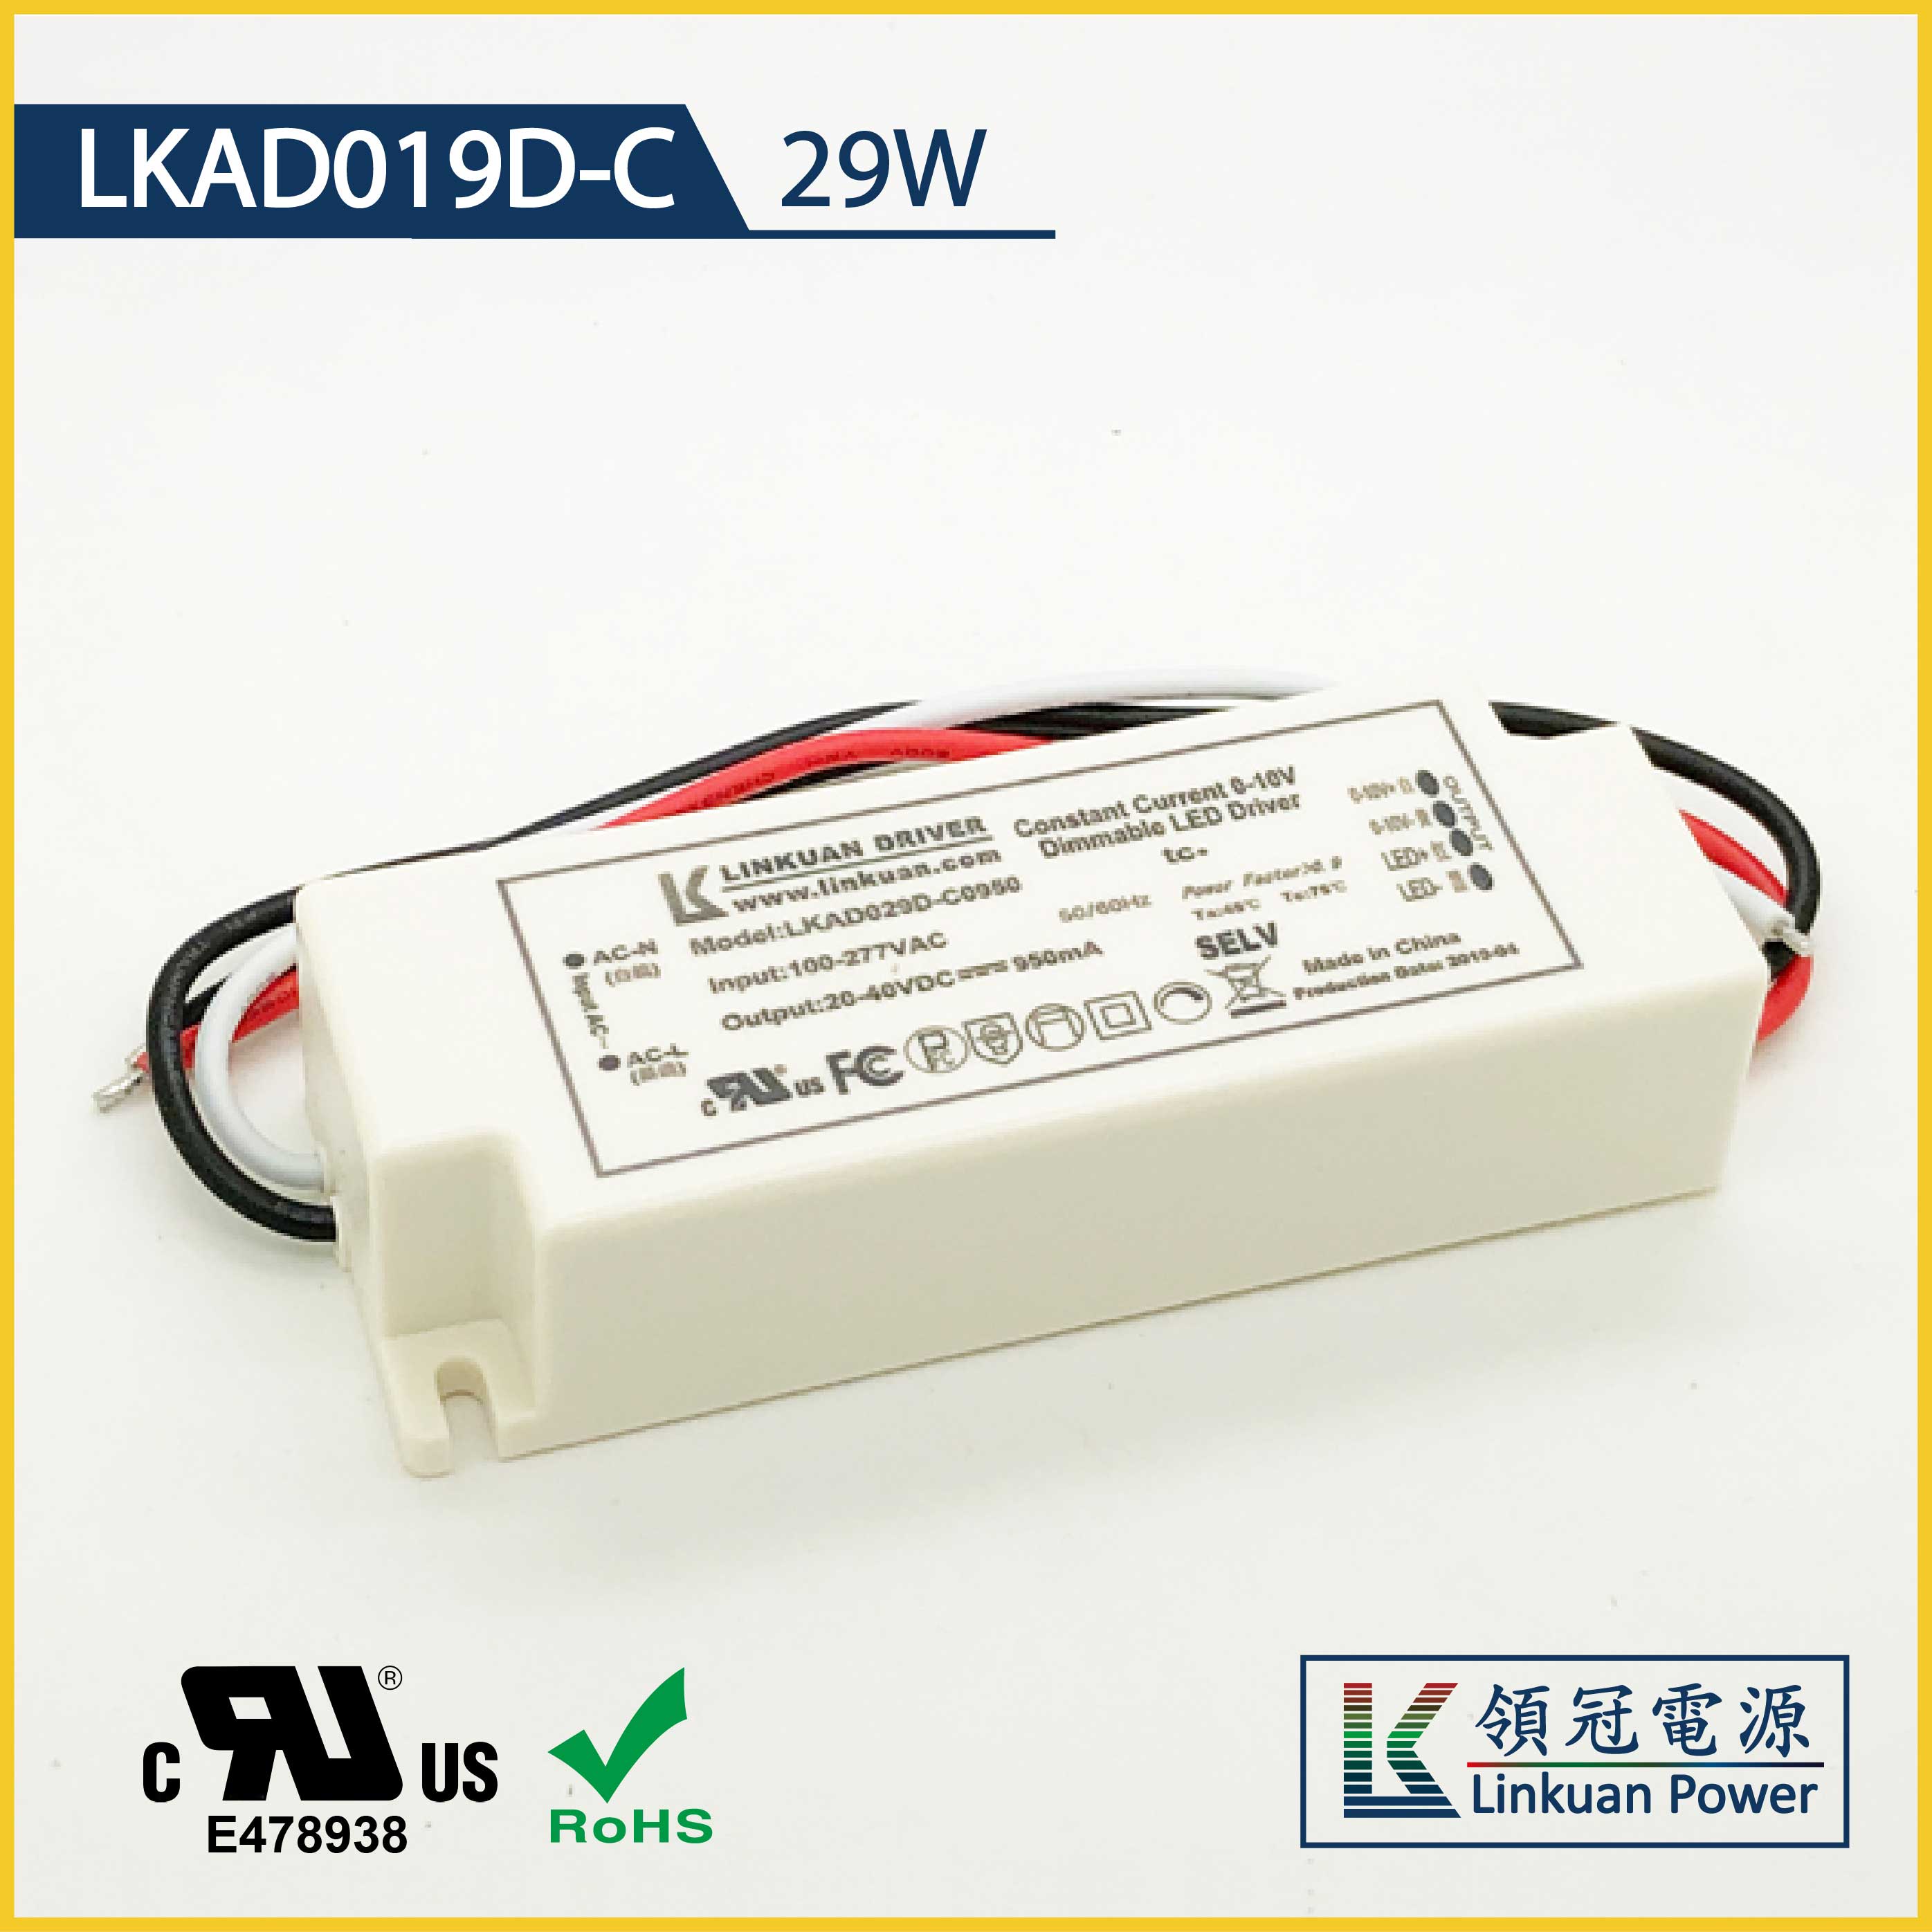 LKAD019D-C 29W 10-20V 1200mA 0-10V Dimming LED drivers